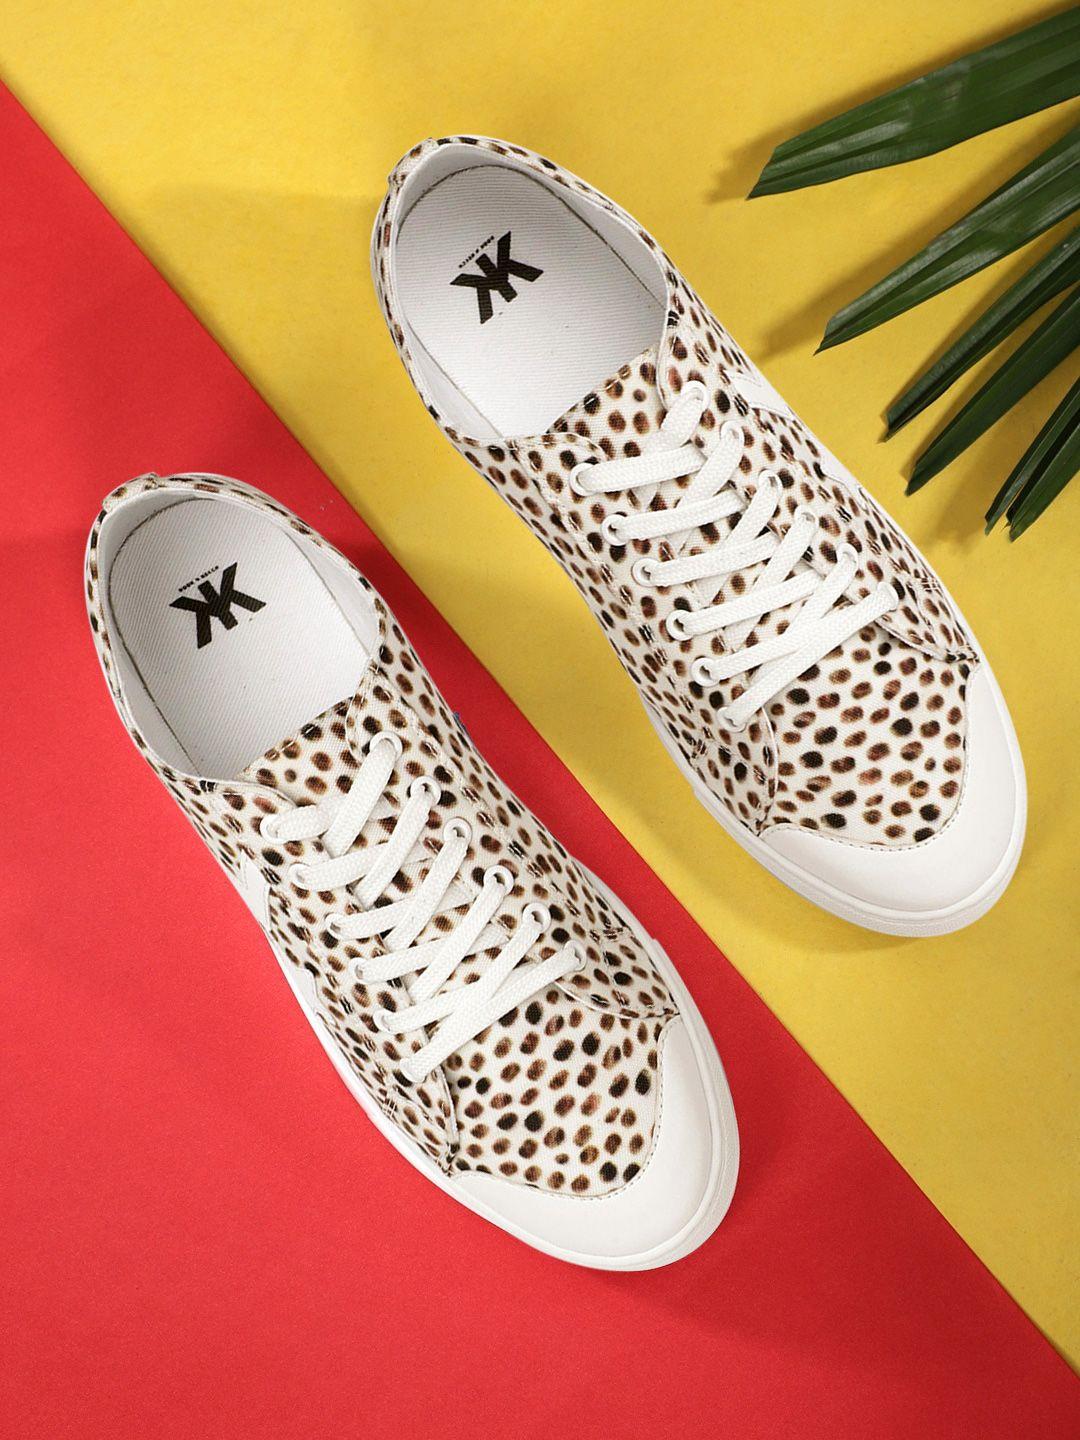 kook n keech women brown & off-white printed sneakers